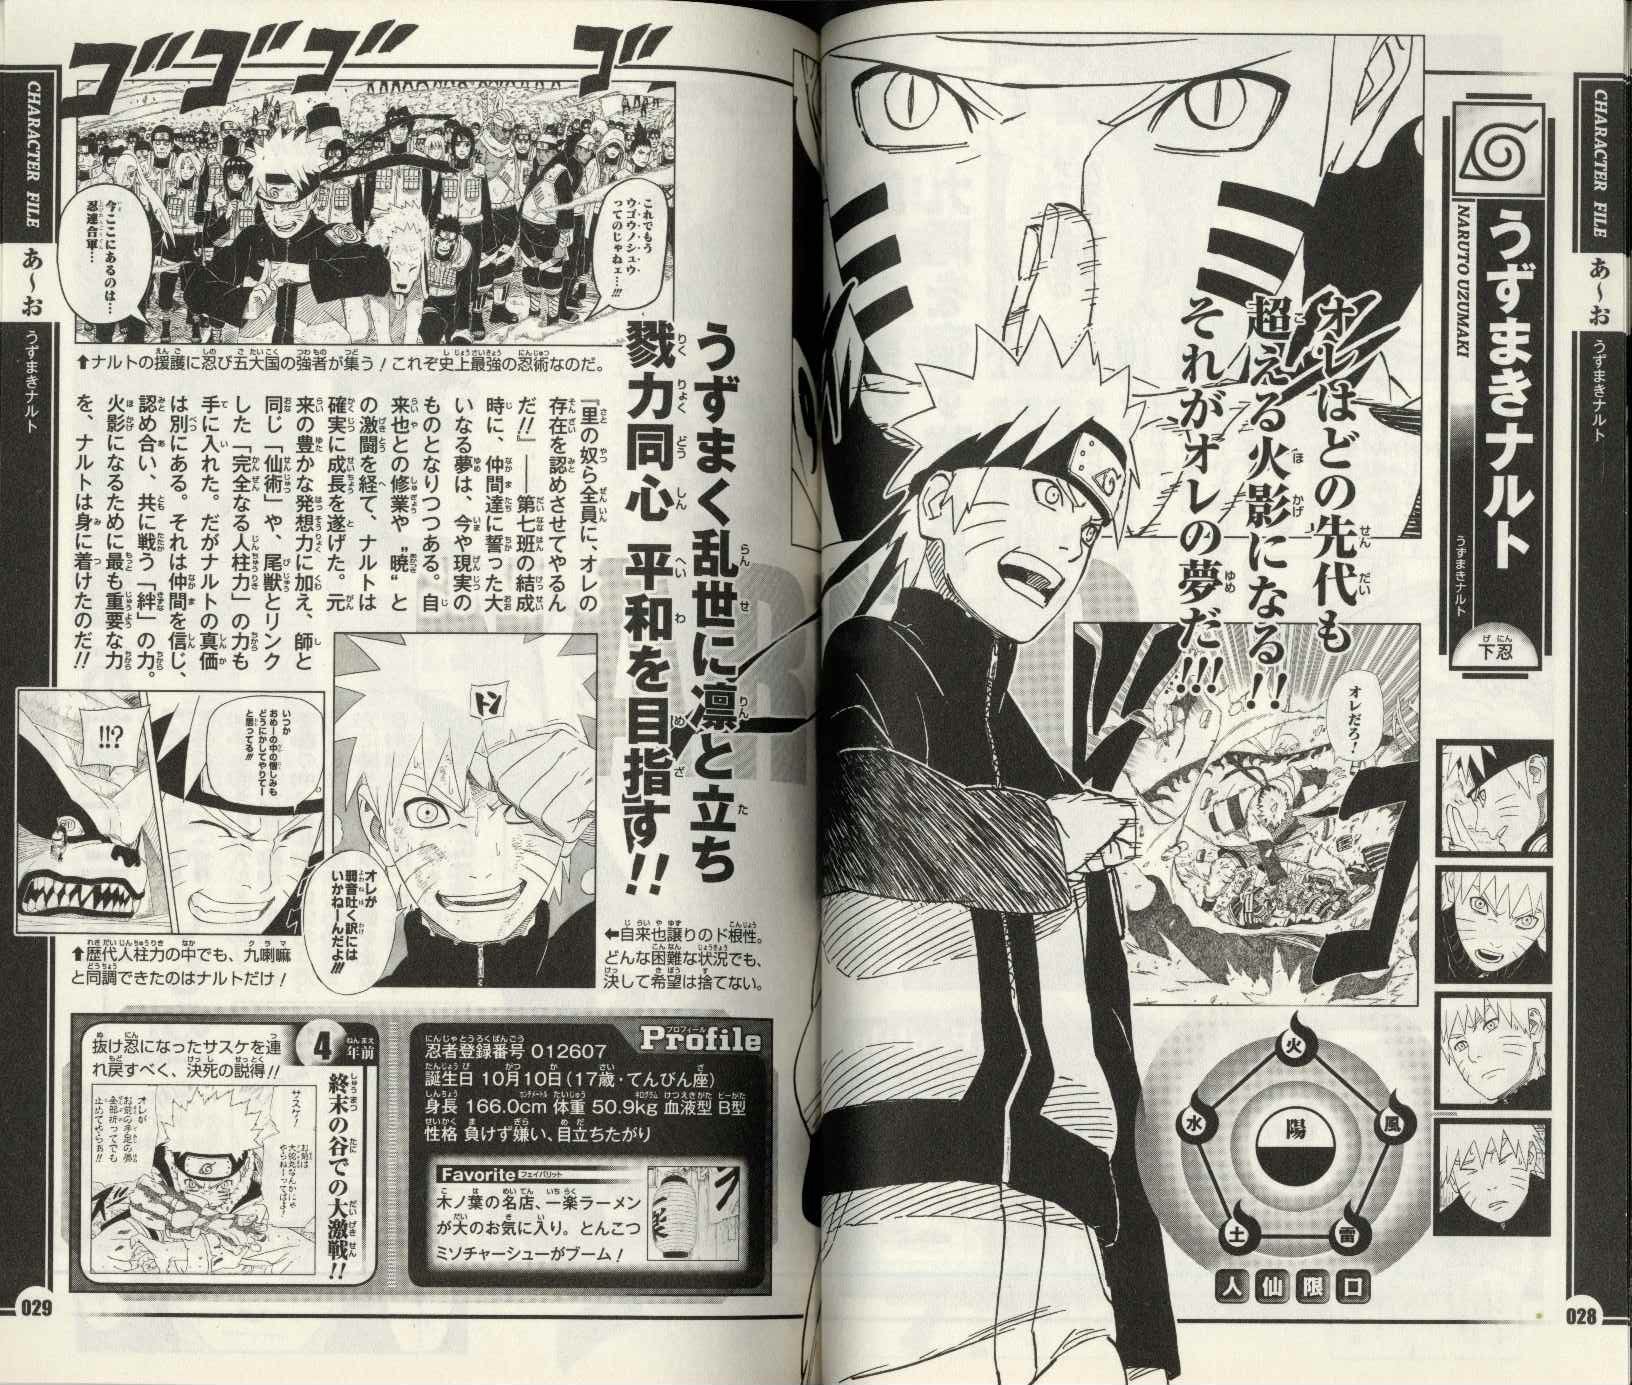 集英社 ジャンプコミックス 岸本斉史 Naruto ナルト オフィシャルファンブック秘伝 陣の書 まんだらけ Mandarake